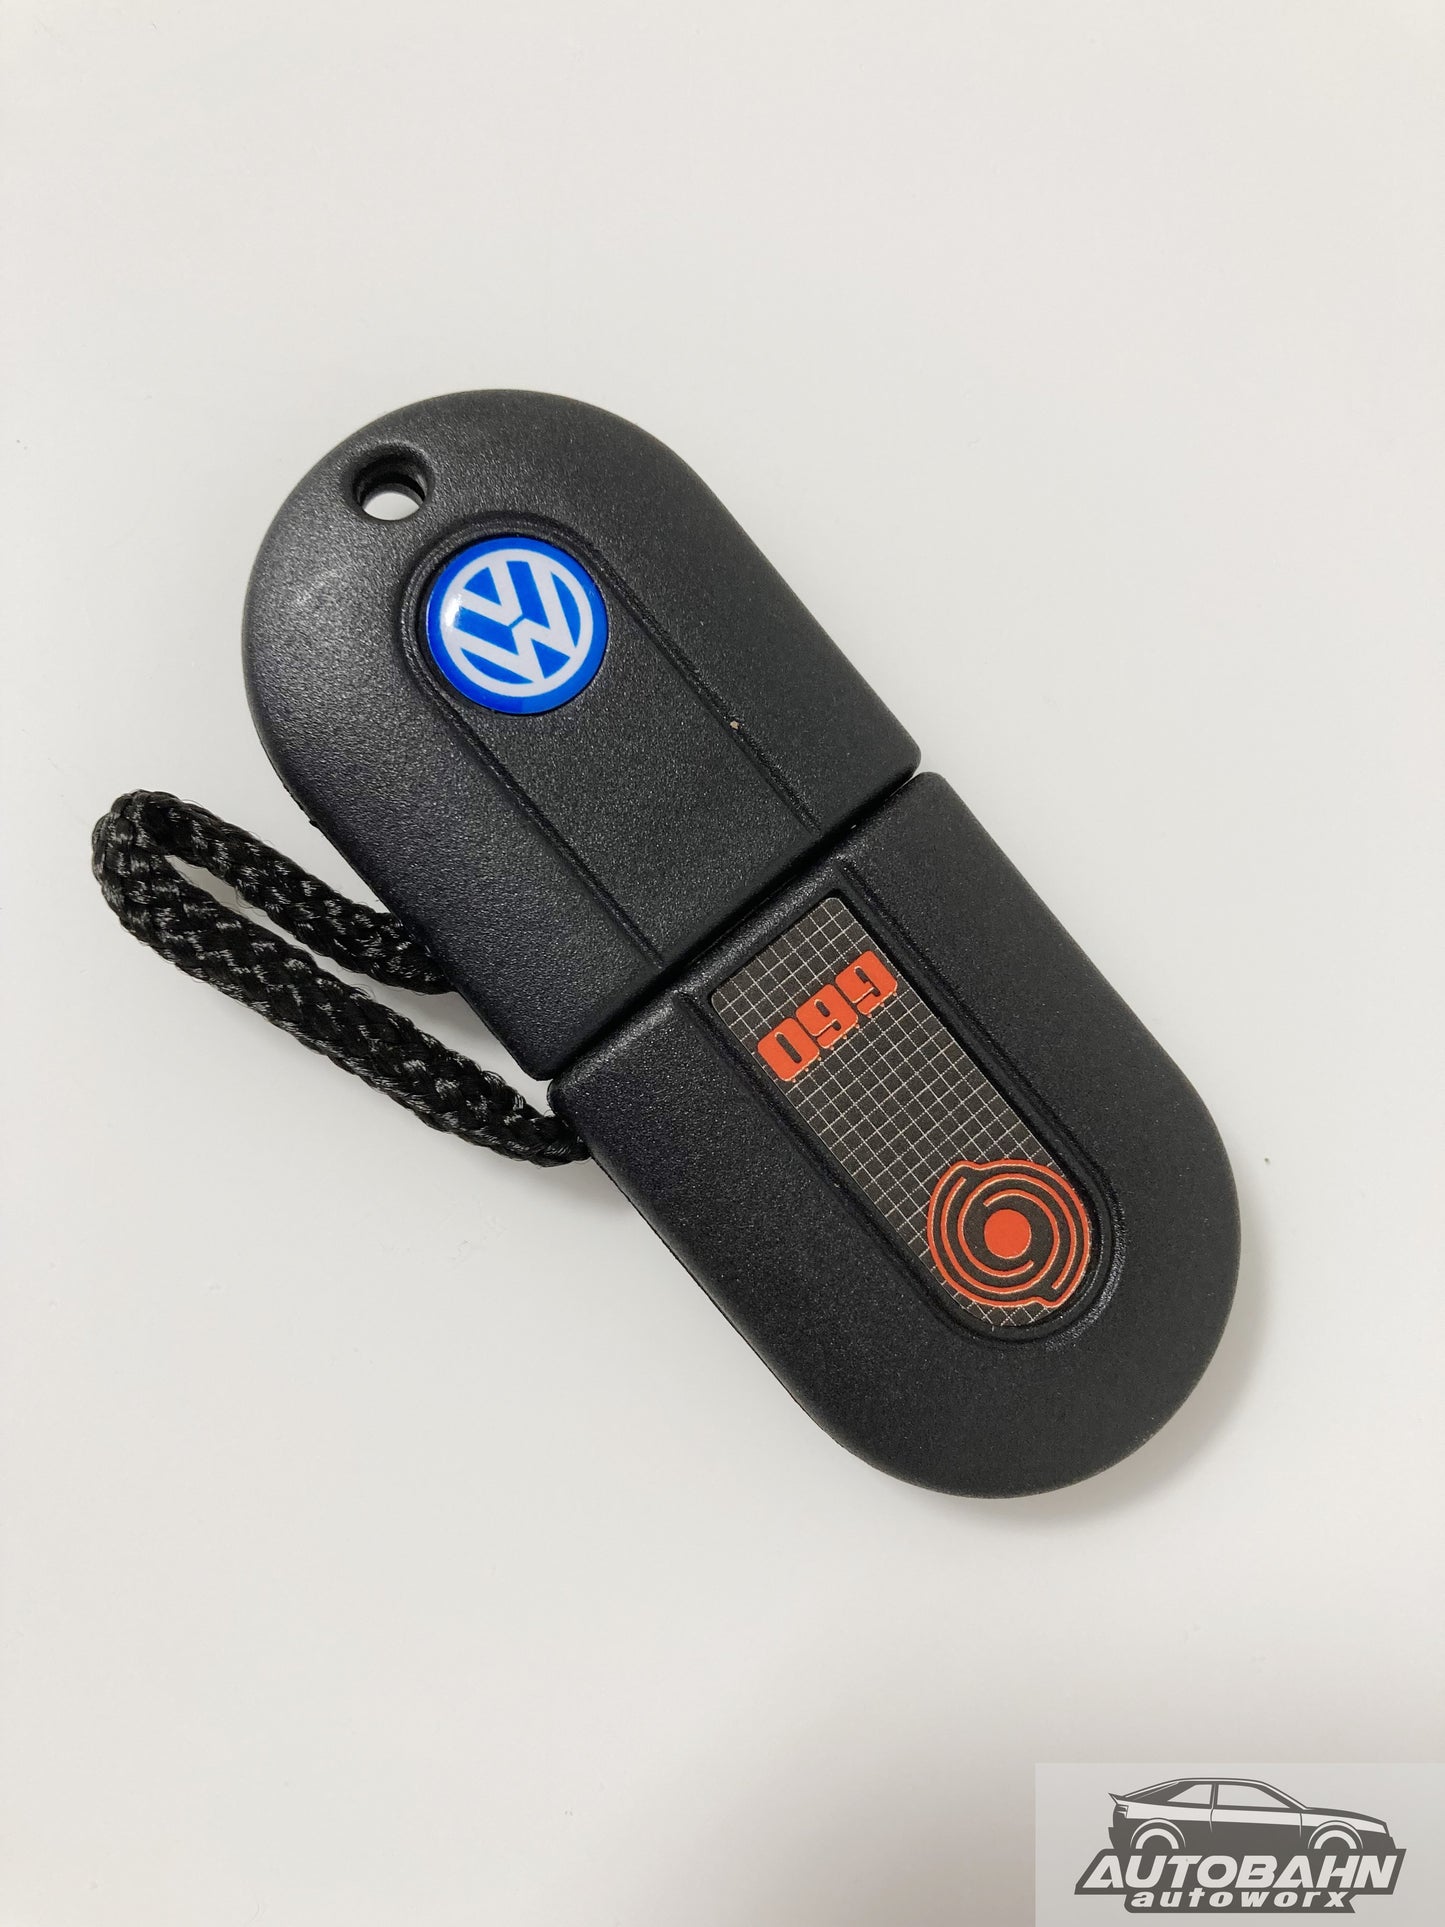 VW Lighted Pill Keys